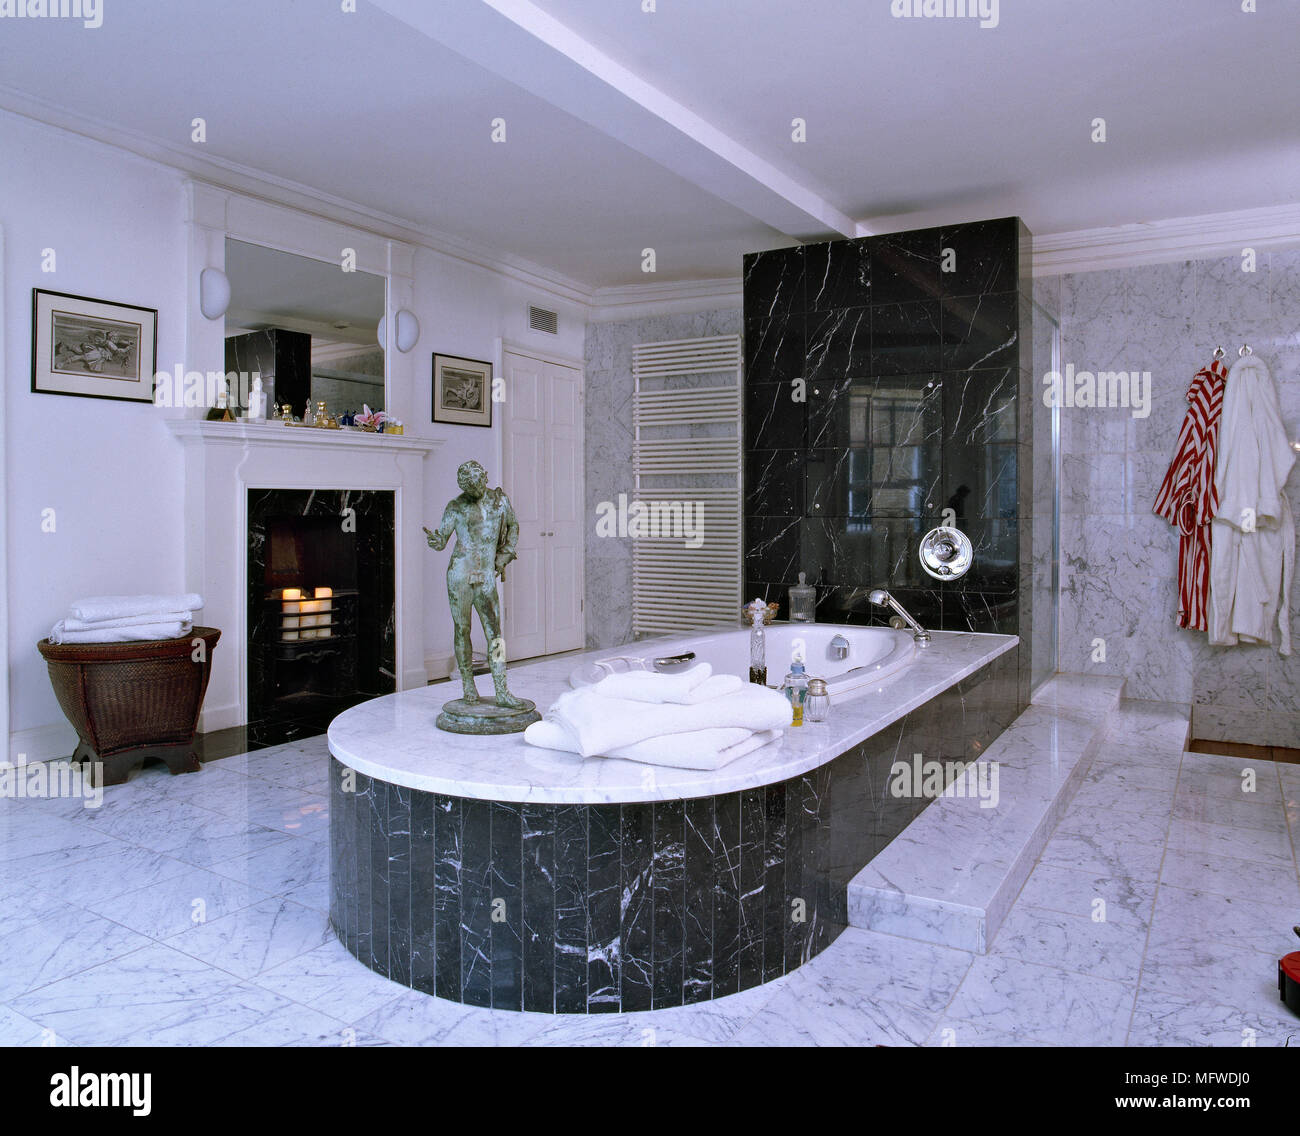 Weißes Badezimmer mit Marmorboden, Badewanne aus Marmor umgeben  Stockfotografie - Alamy